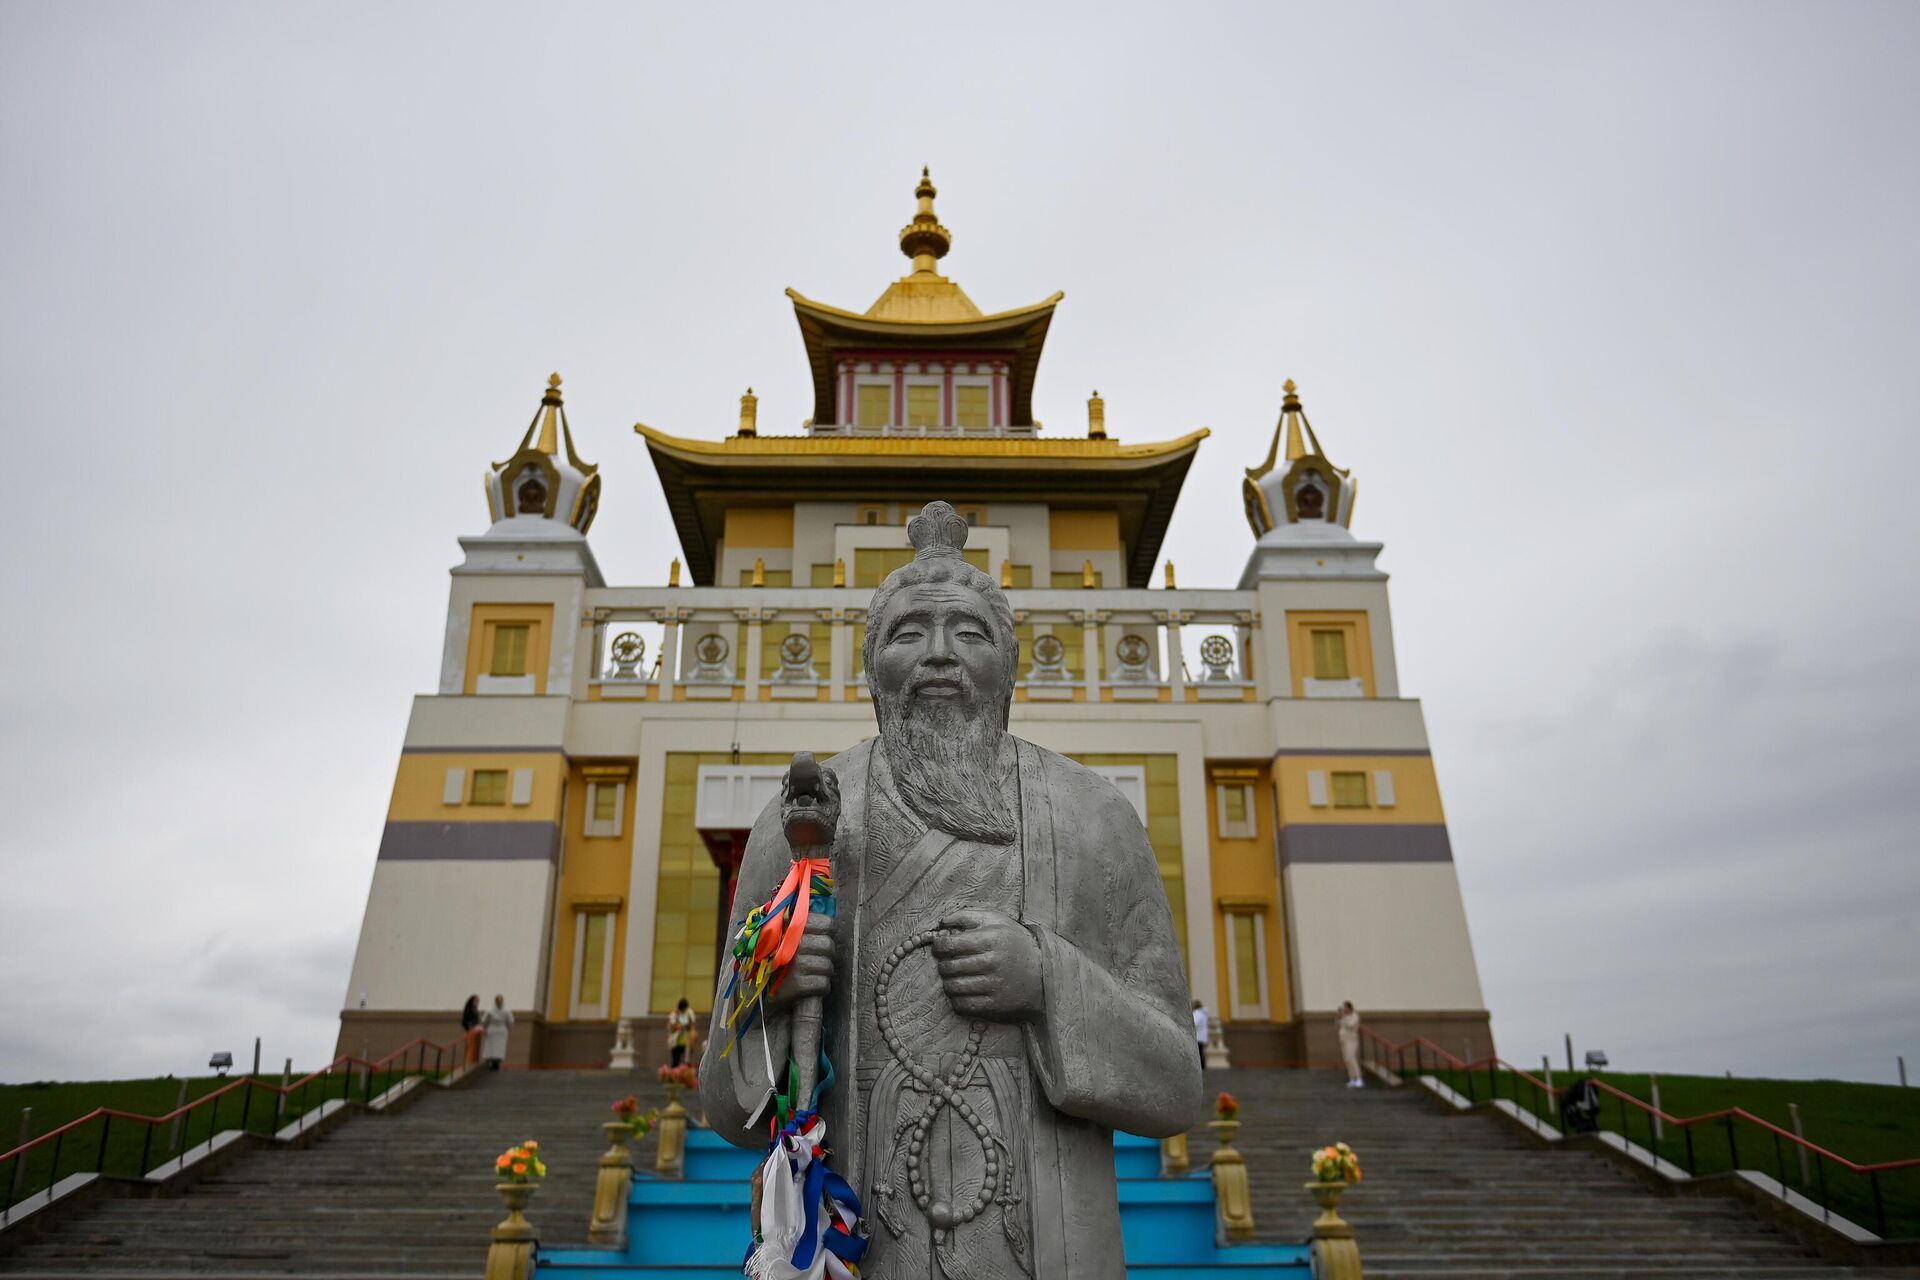 Статуя Белого Старца, расположенная перед входом в элистинский хурул Золотая обитель Будды Шакьямуни